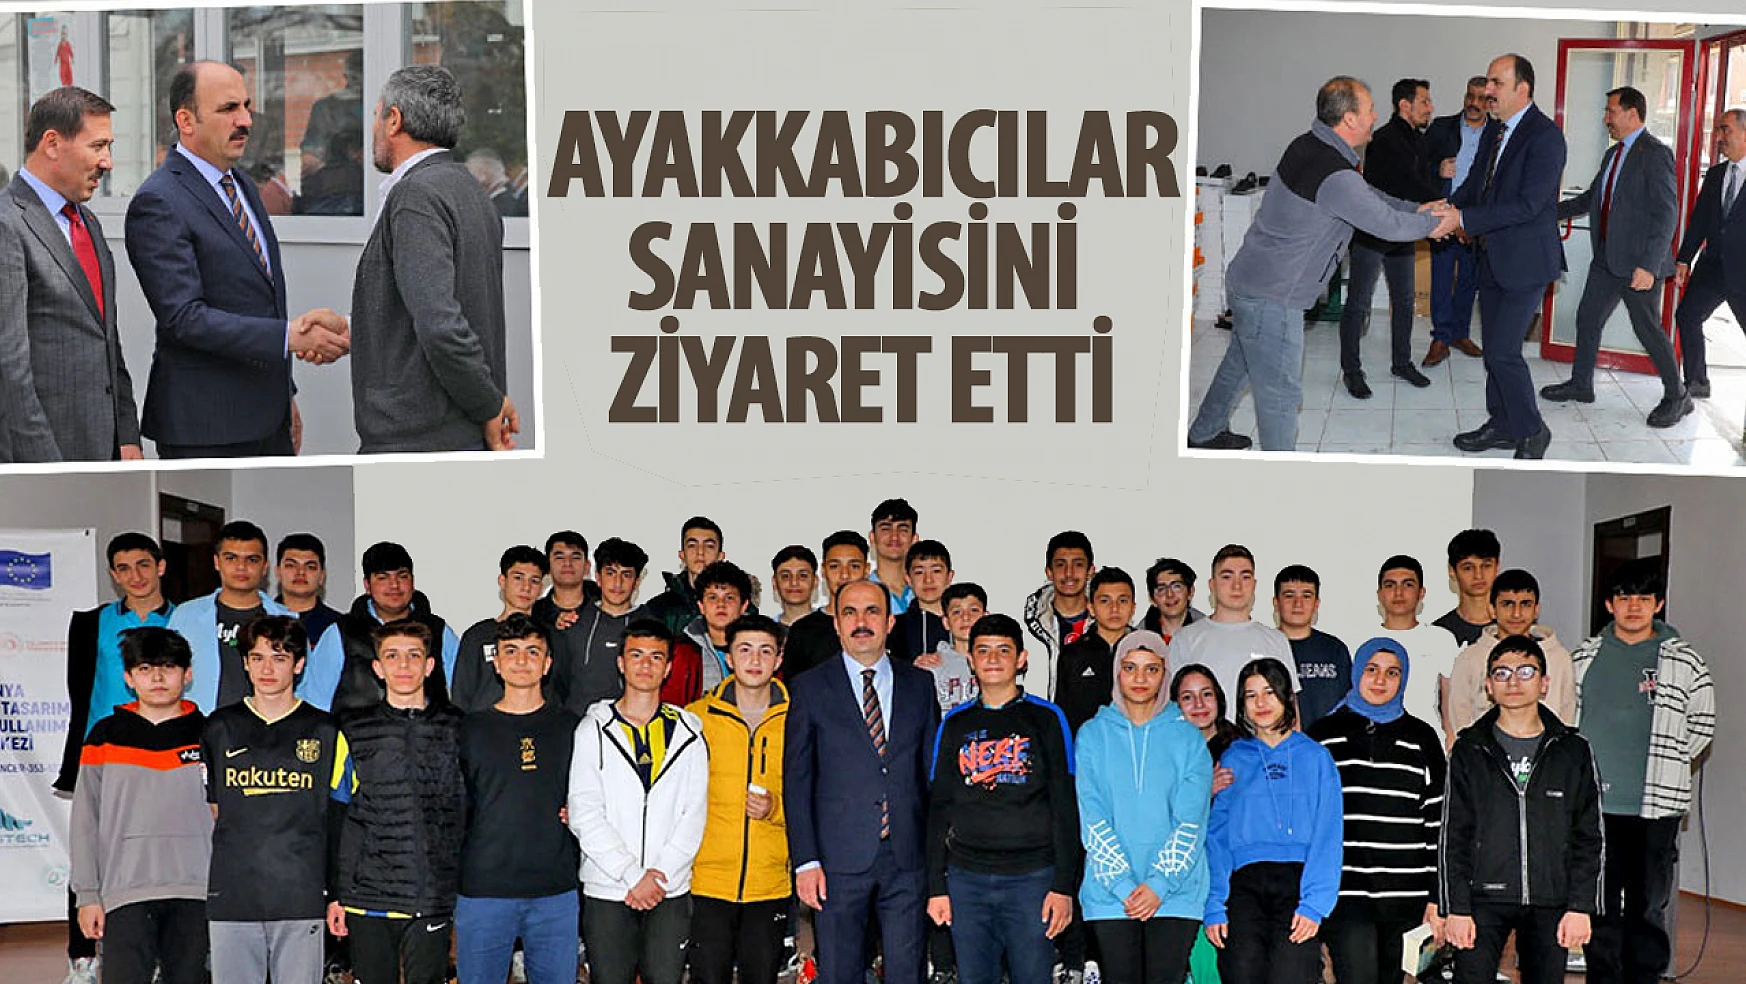 Başkan Altay, Aykent Ayakkabıcılar Sanayi'nde Esnaflar ve Öğrencilerle Buluştu